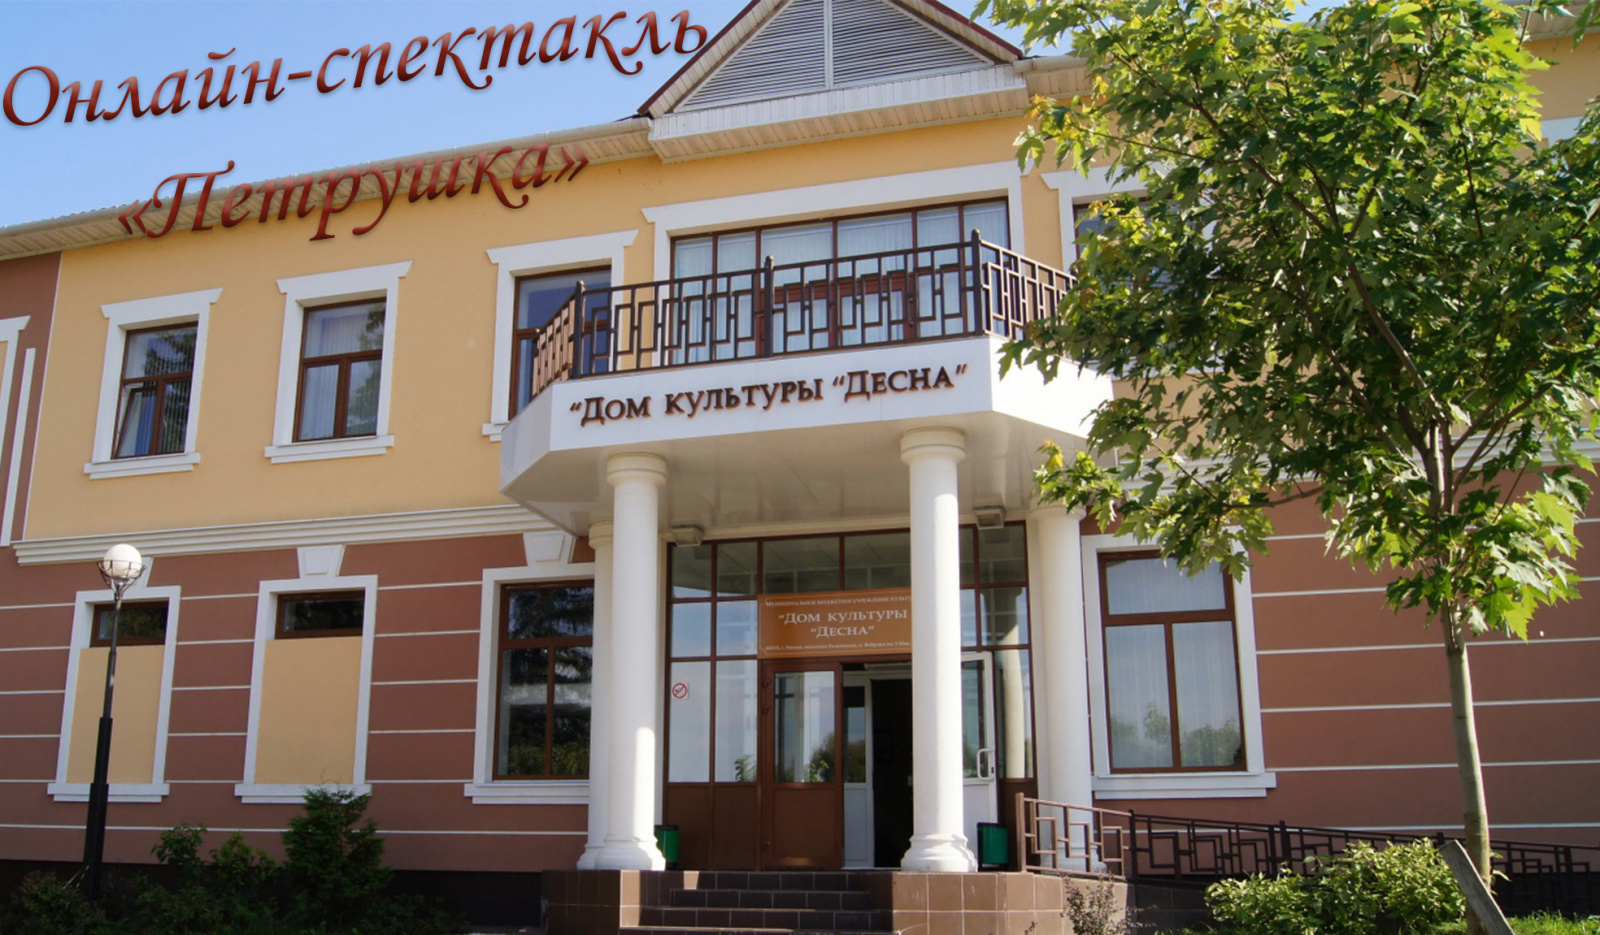 Дом культуры «Десна» проведет трансляцию спектакля «Петрушка»